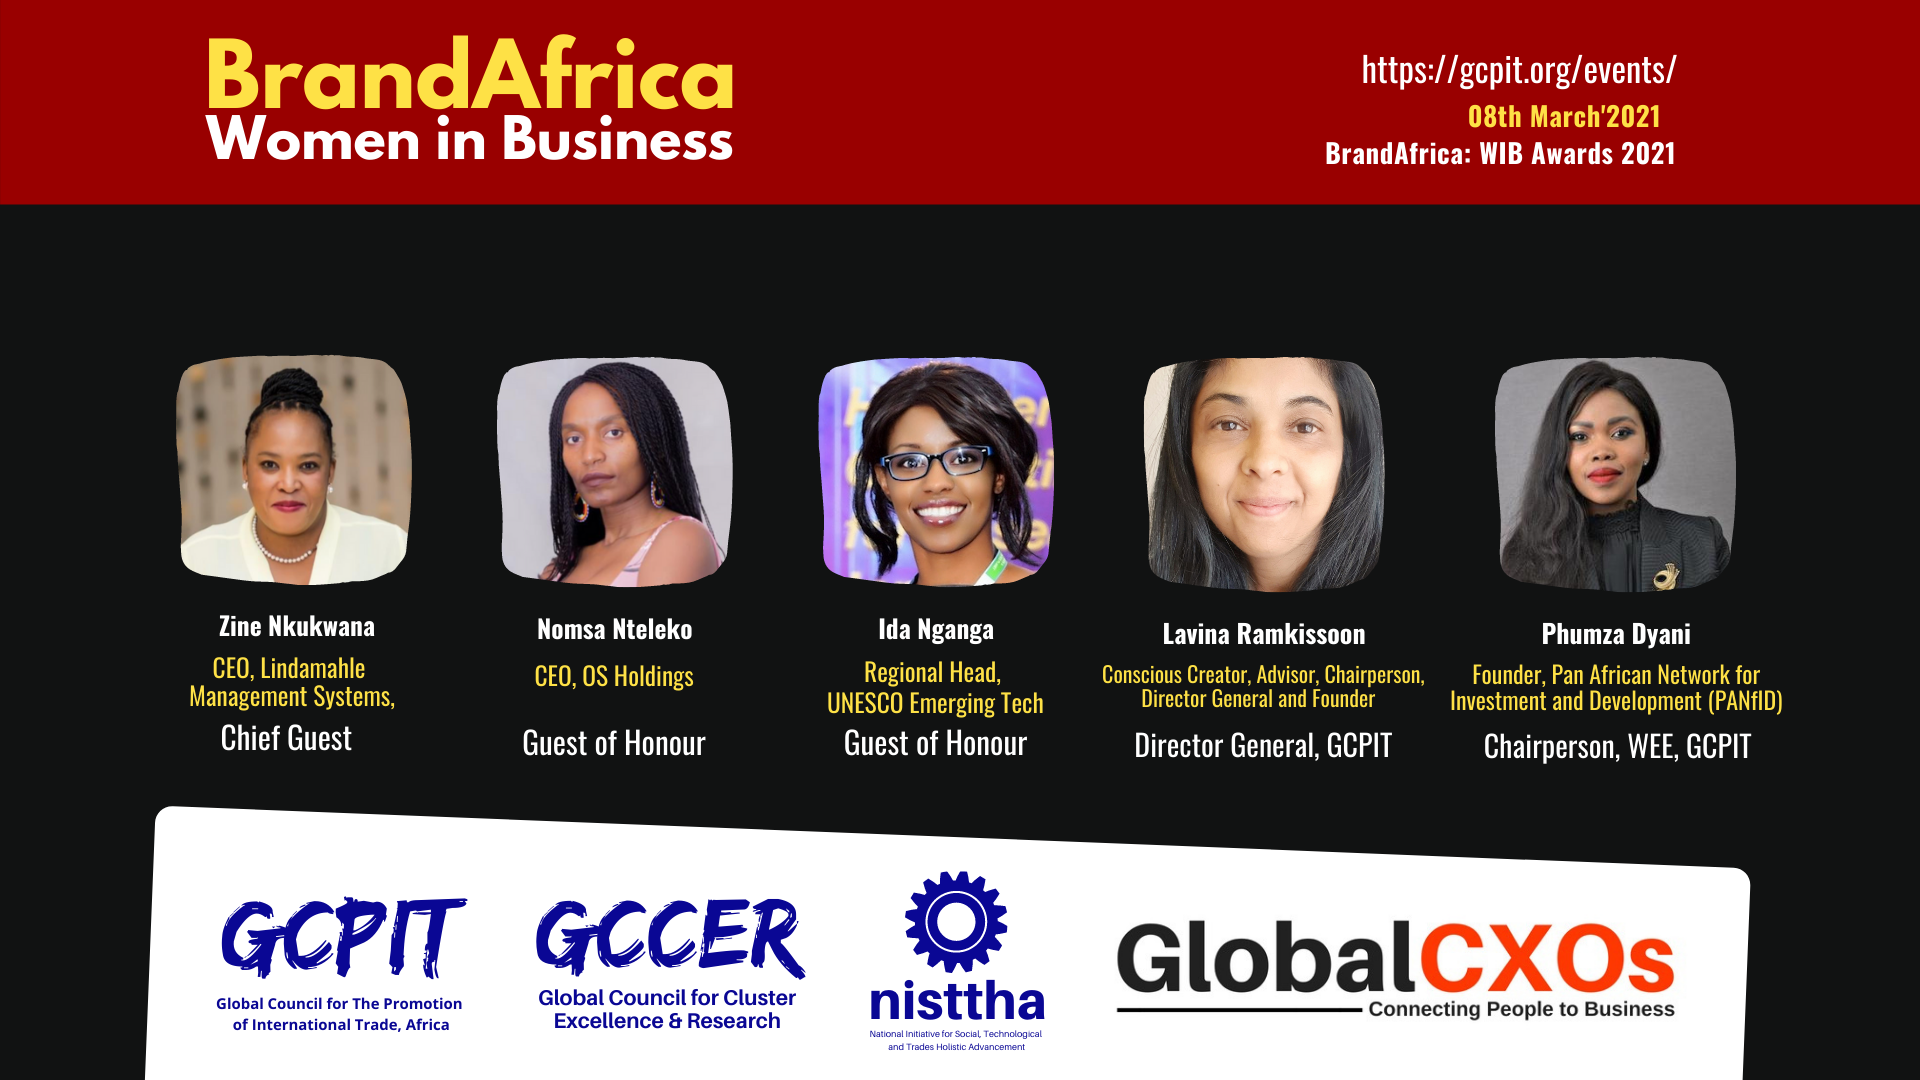 GCPIT South Africa honours twenty women entrepreneurs with BrandAfrica: Women in Business Awards 2021